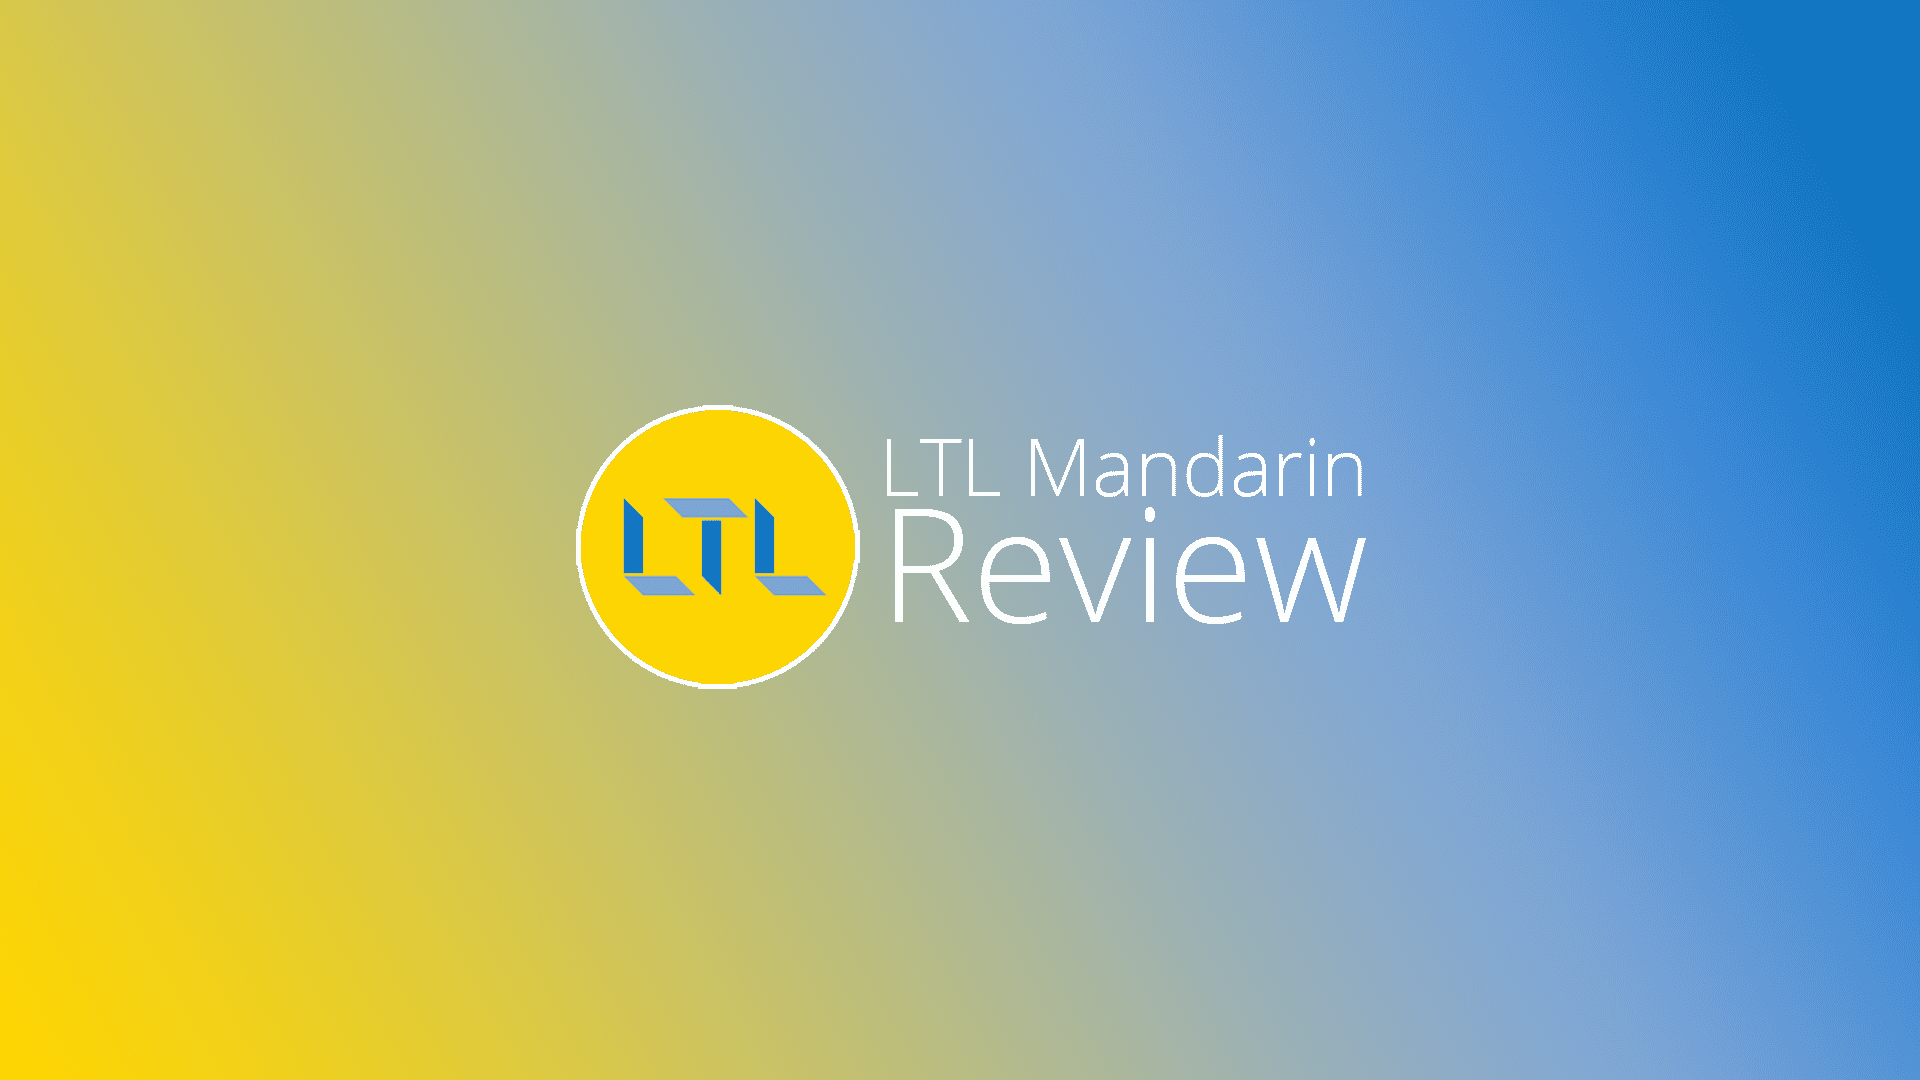 LTL Mandarin Review